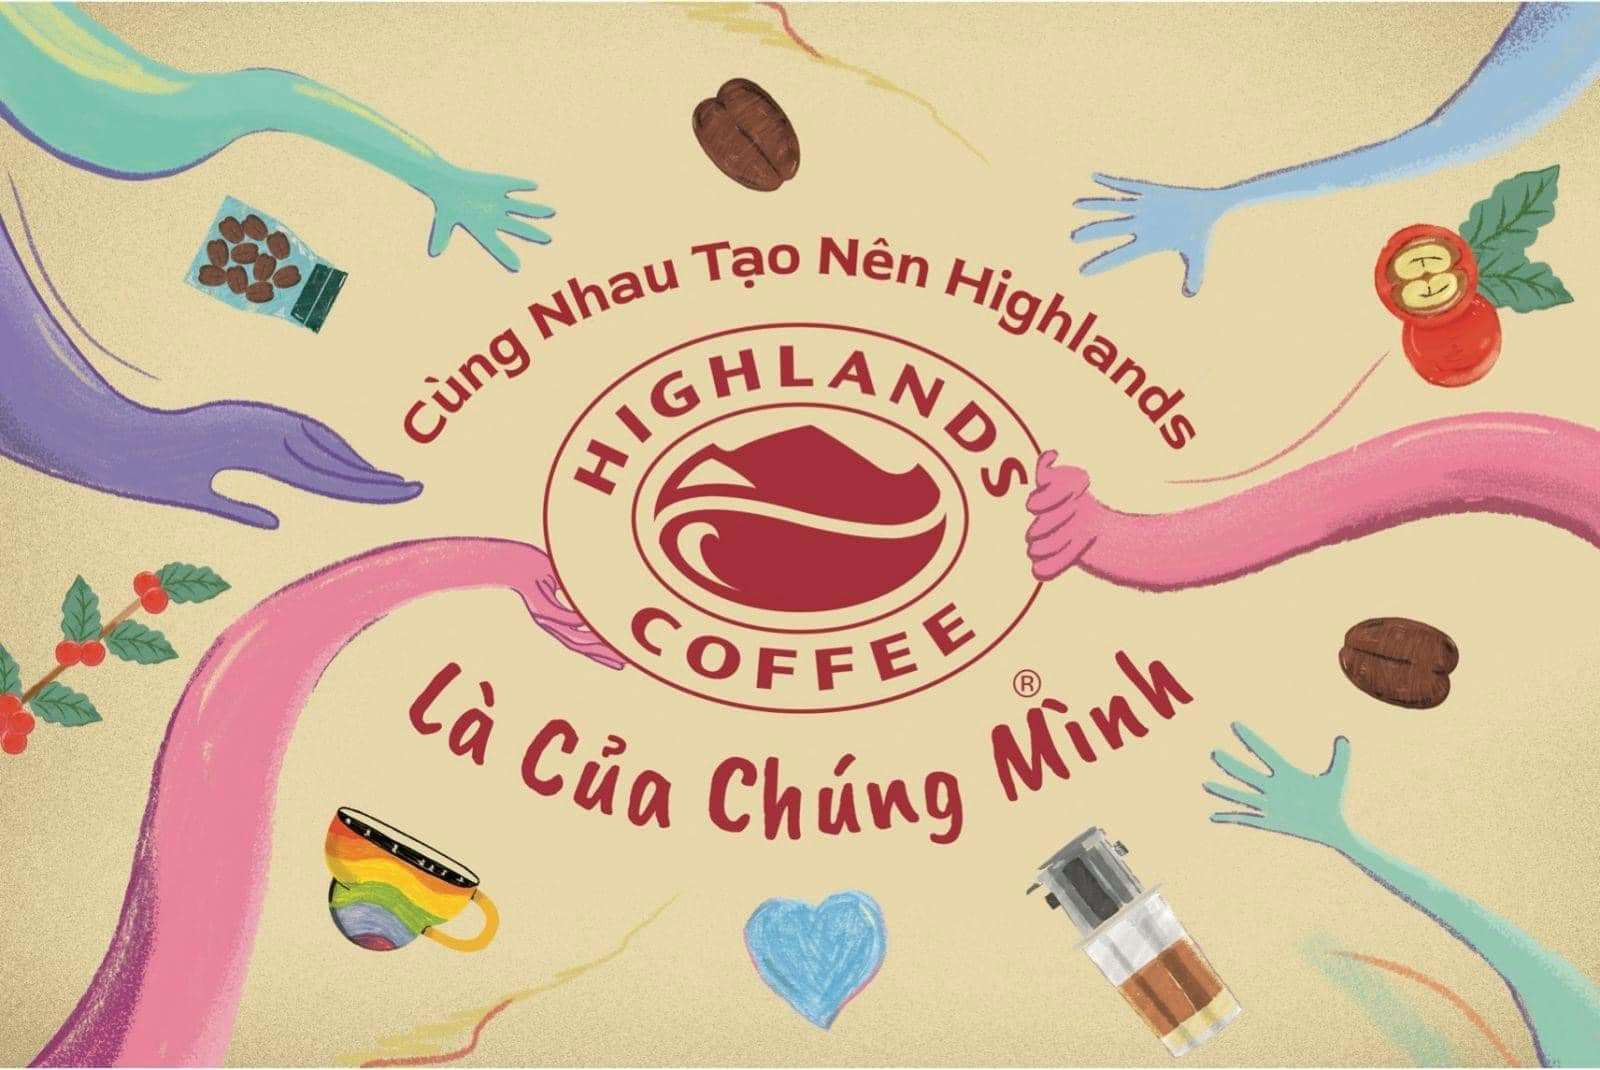 Highlands Coffee thay đổi logo và ra mắt thông điệp hướng về cộng đồng